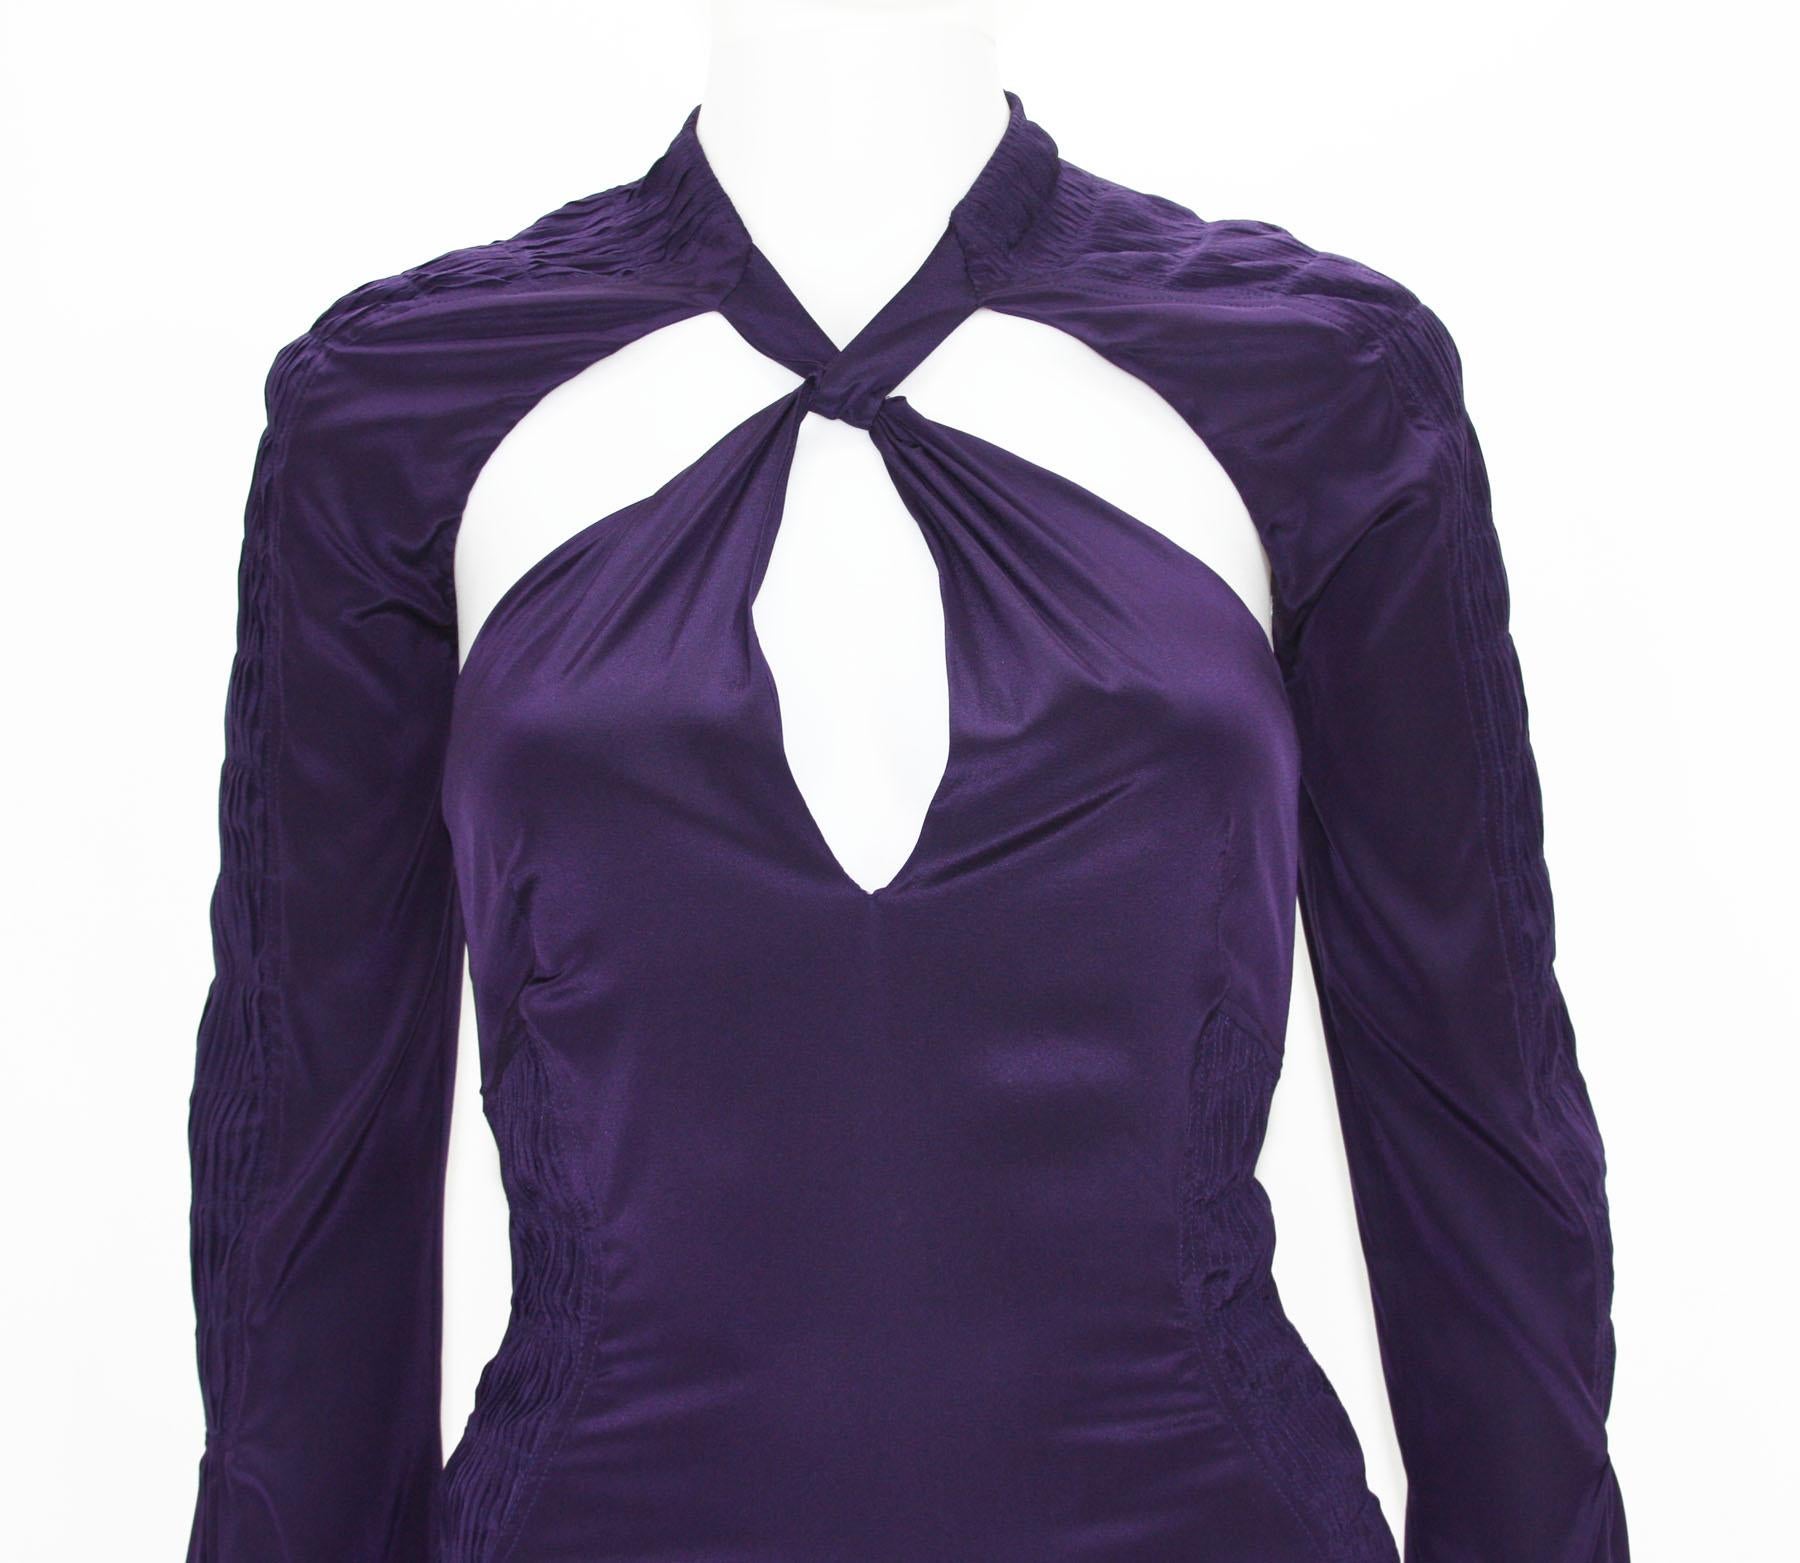 Tom Ford for Gucci, robe dos nu plongeant en soie violet profond, défilé P/É 2004, taille 38 et 44, neuve Pour femmes en vente